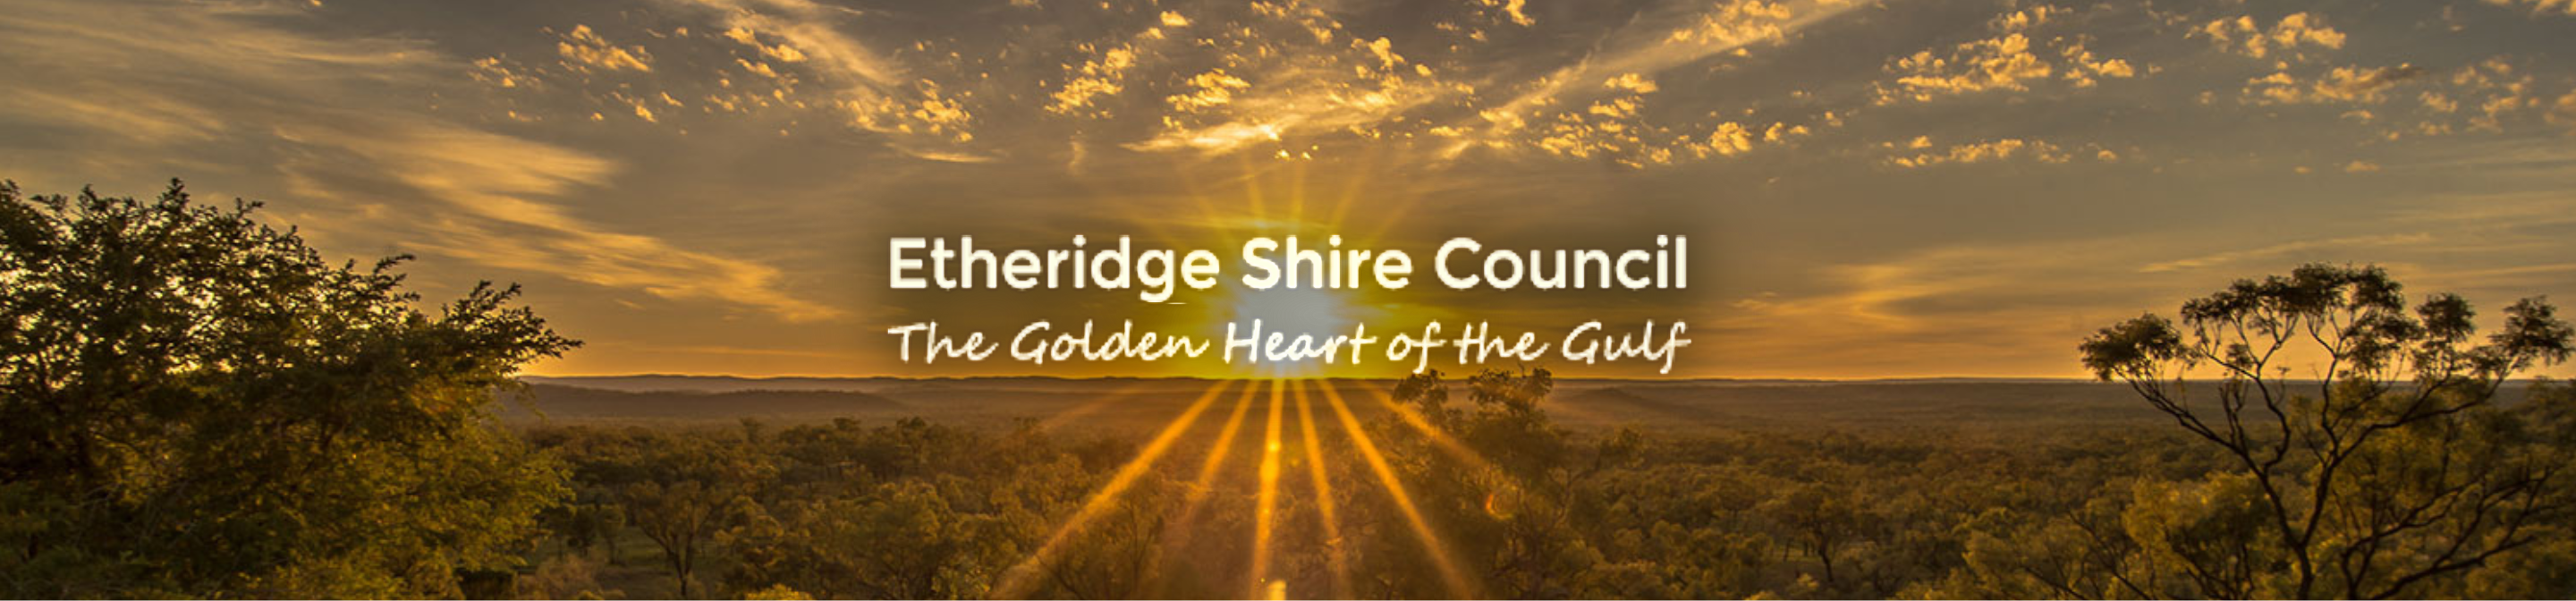 Etheridge Shire Council